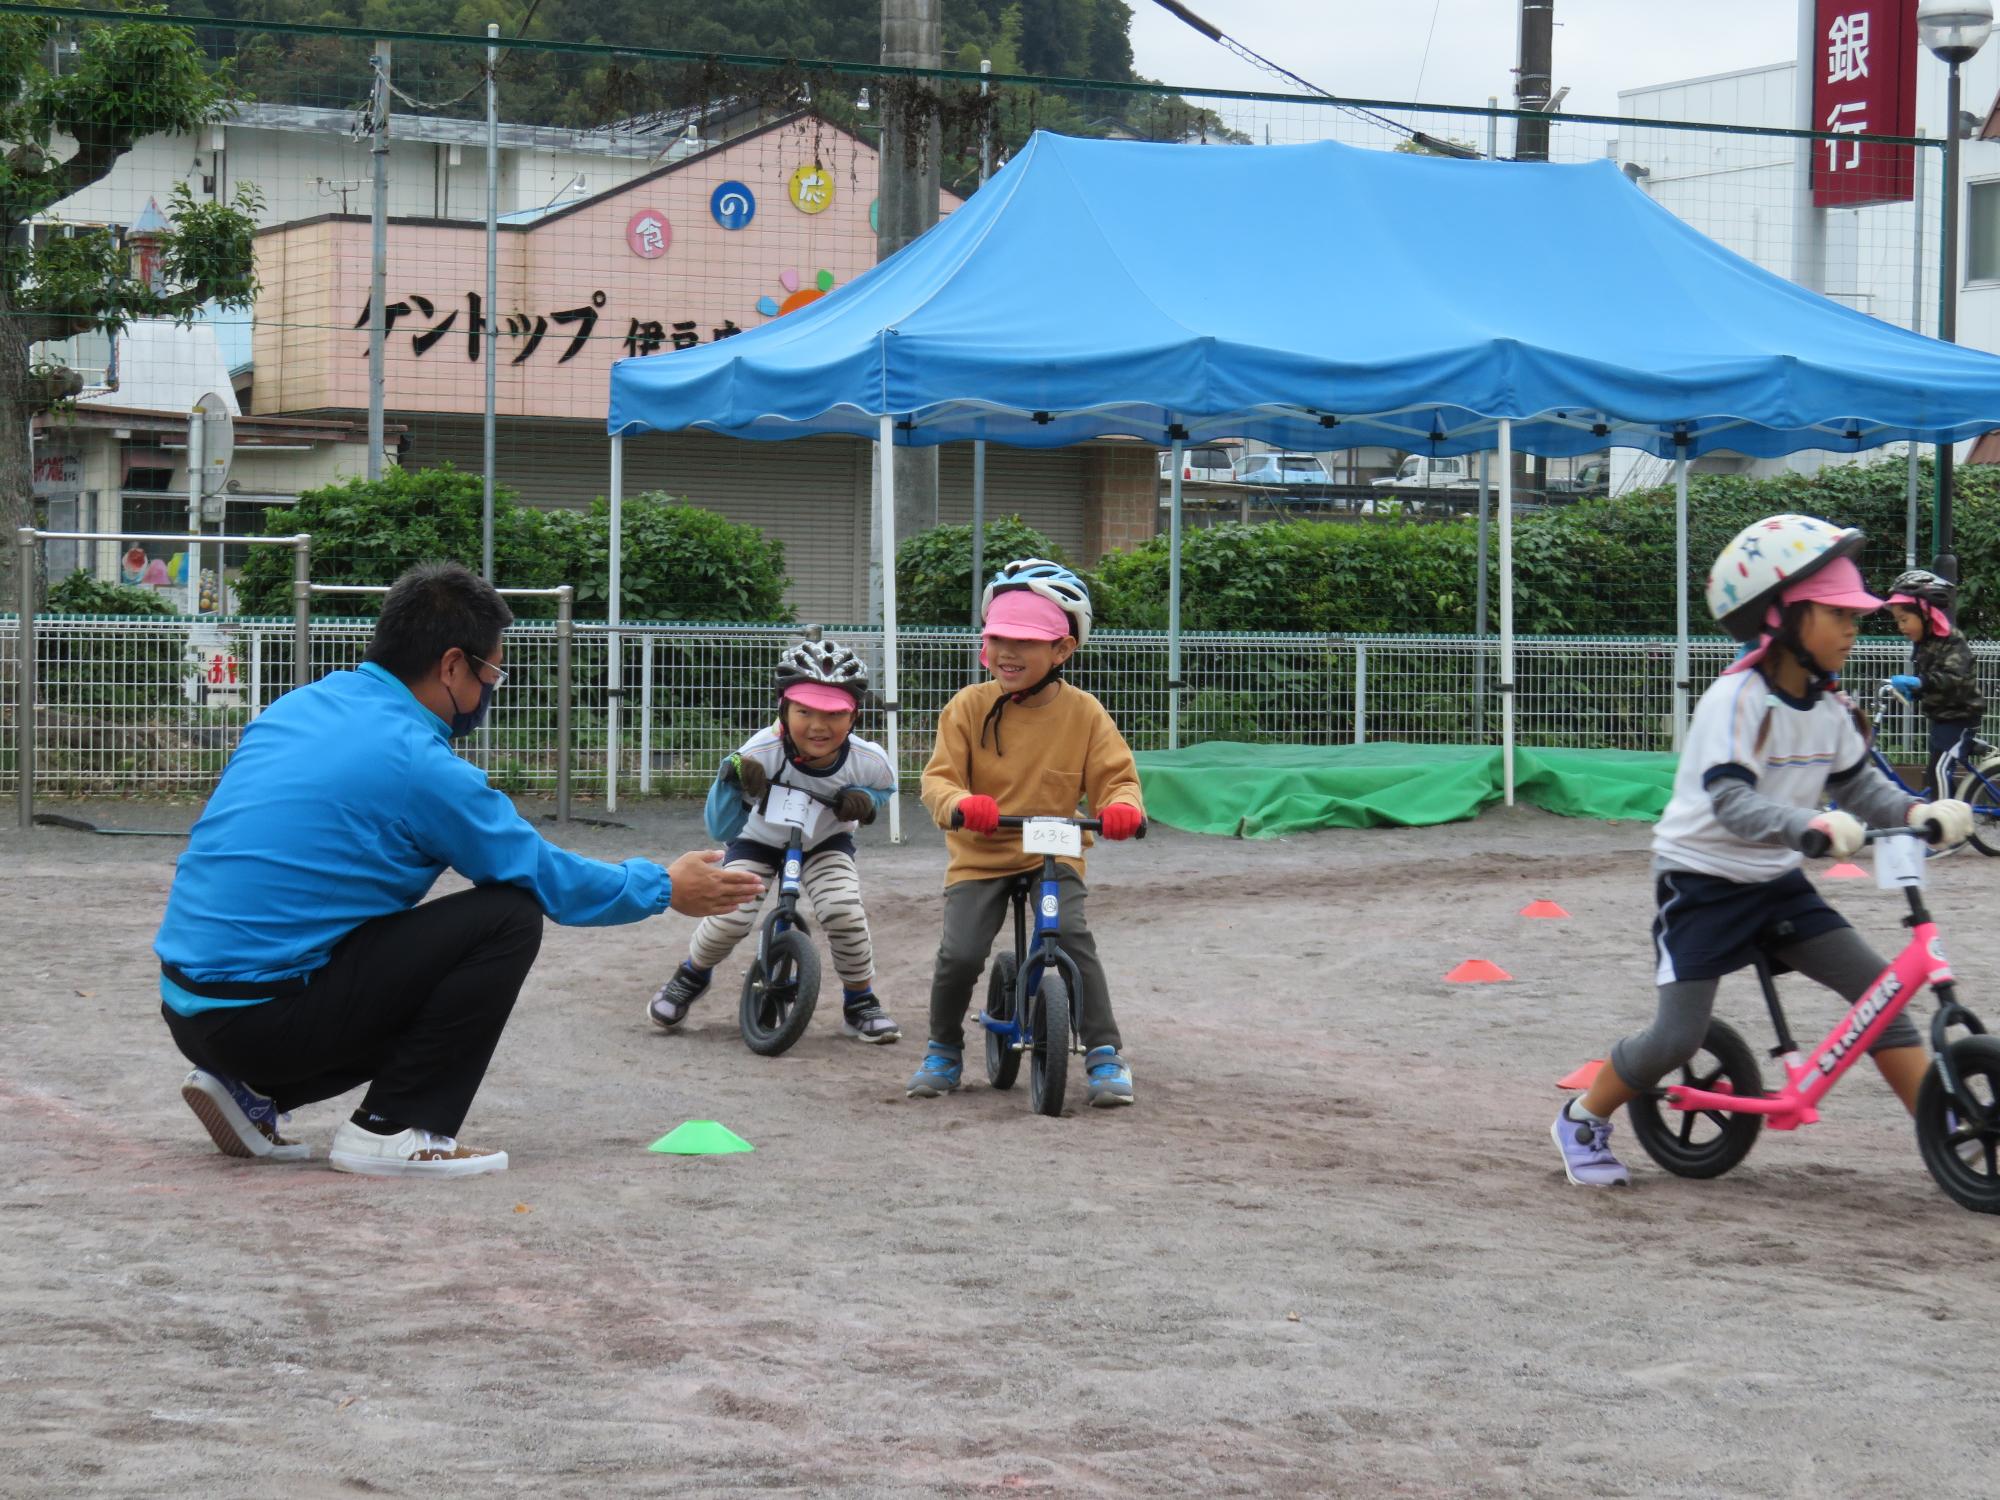 ヘルメットを被って自転車にのった子供2名が横にしゃがんでいる男性と話しながら笑っている写真